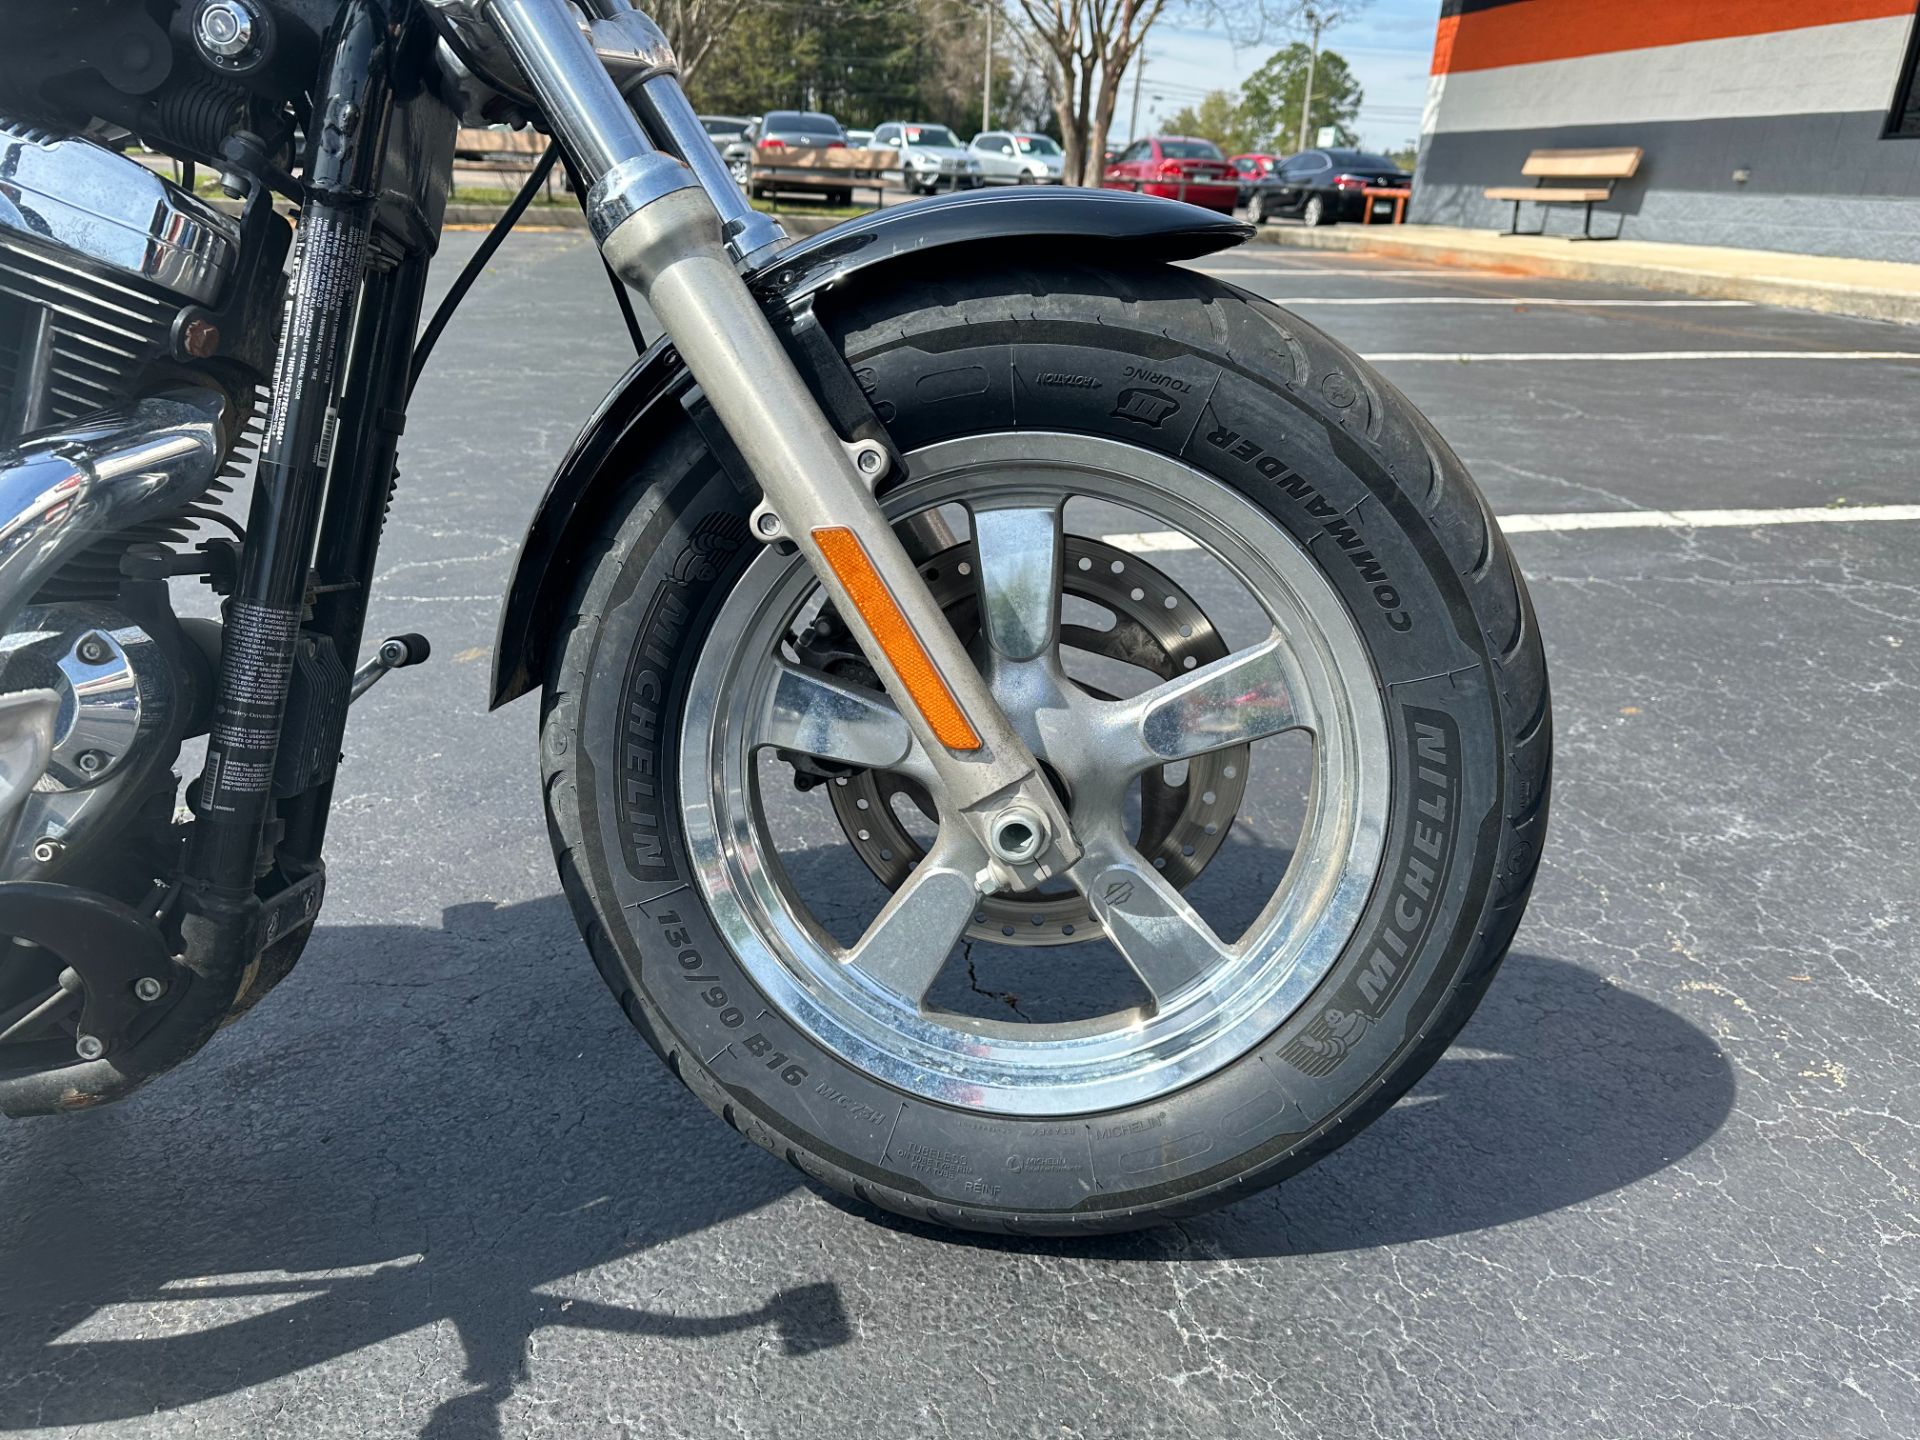 2014 Harley-Davidson 1200 Custom in Mobile, Alabama - Photo 4